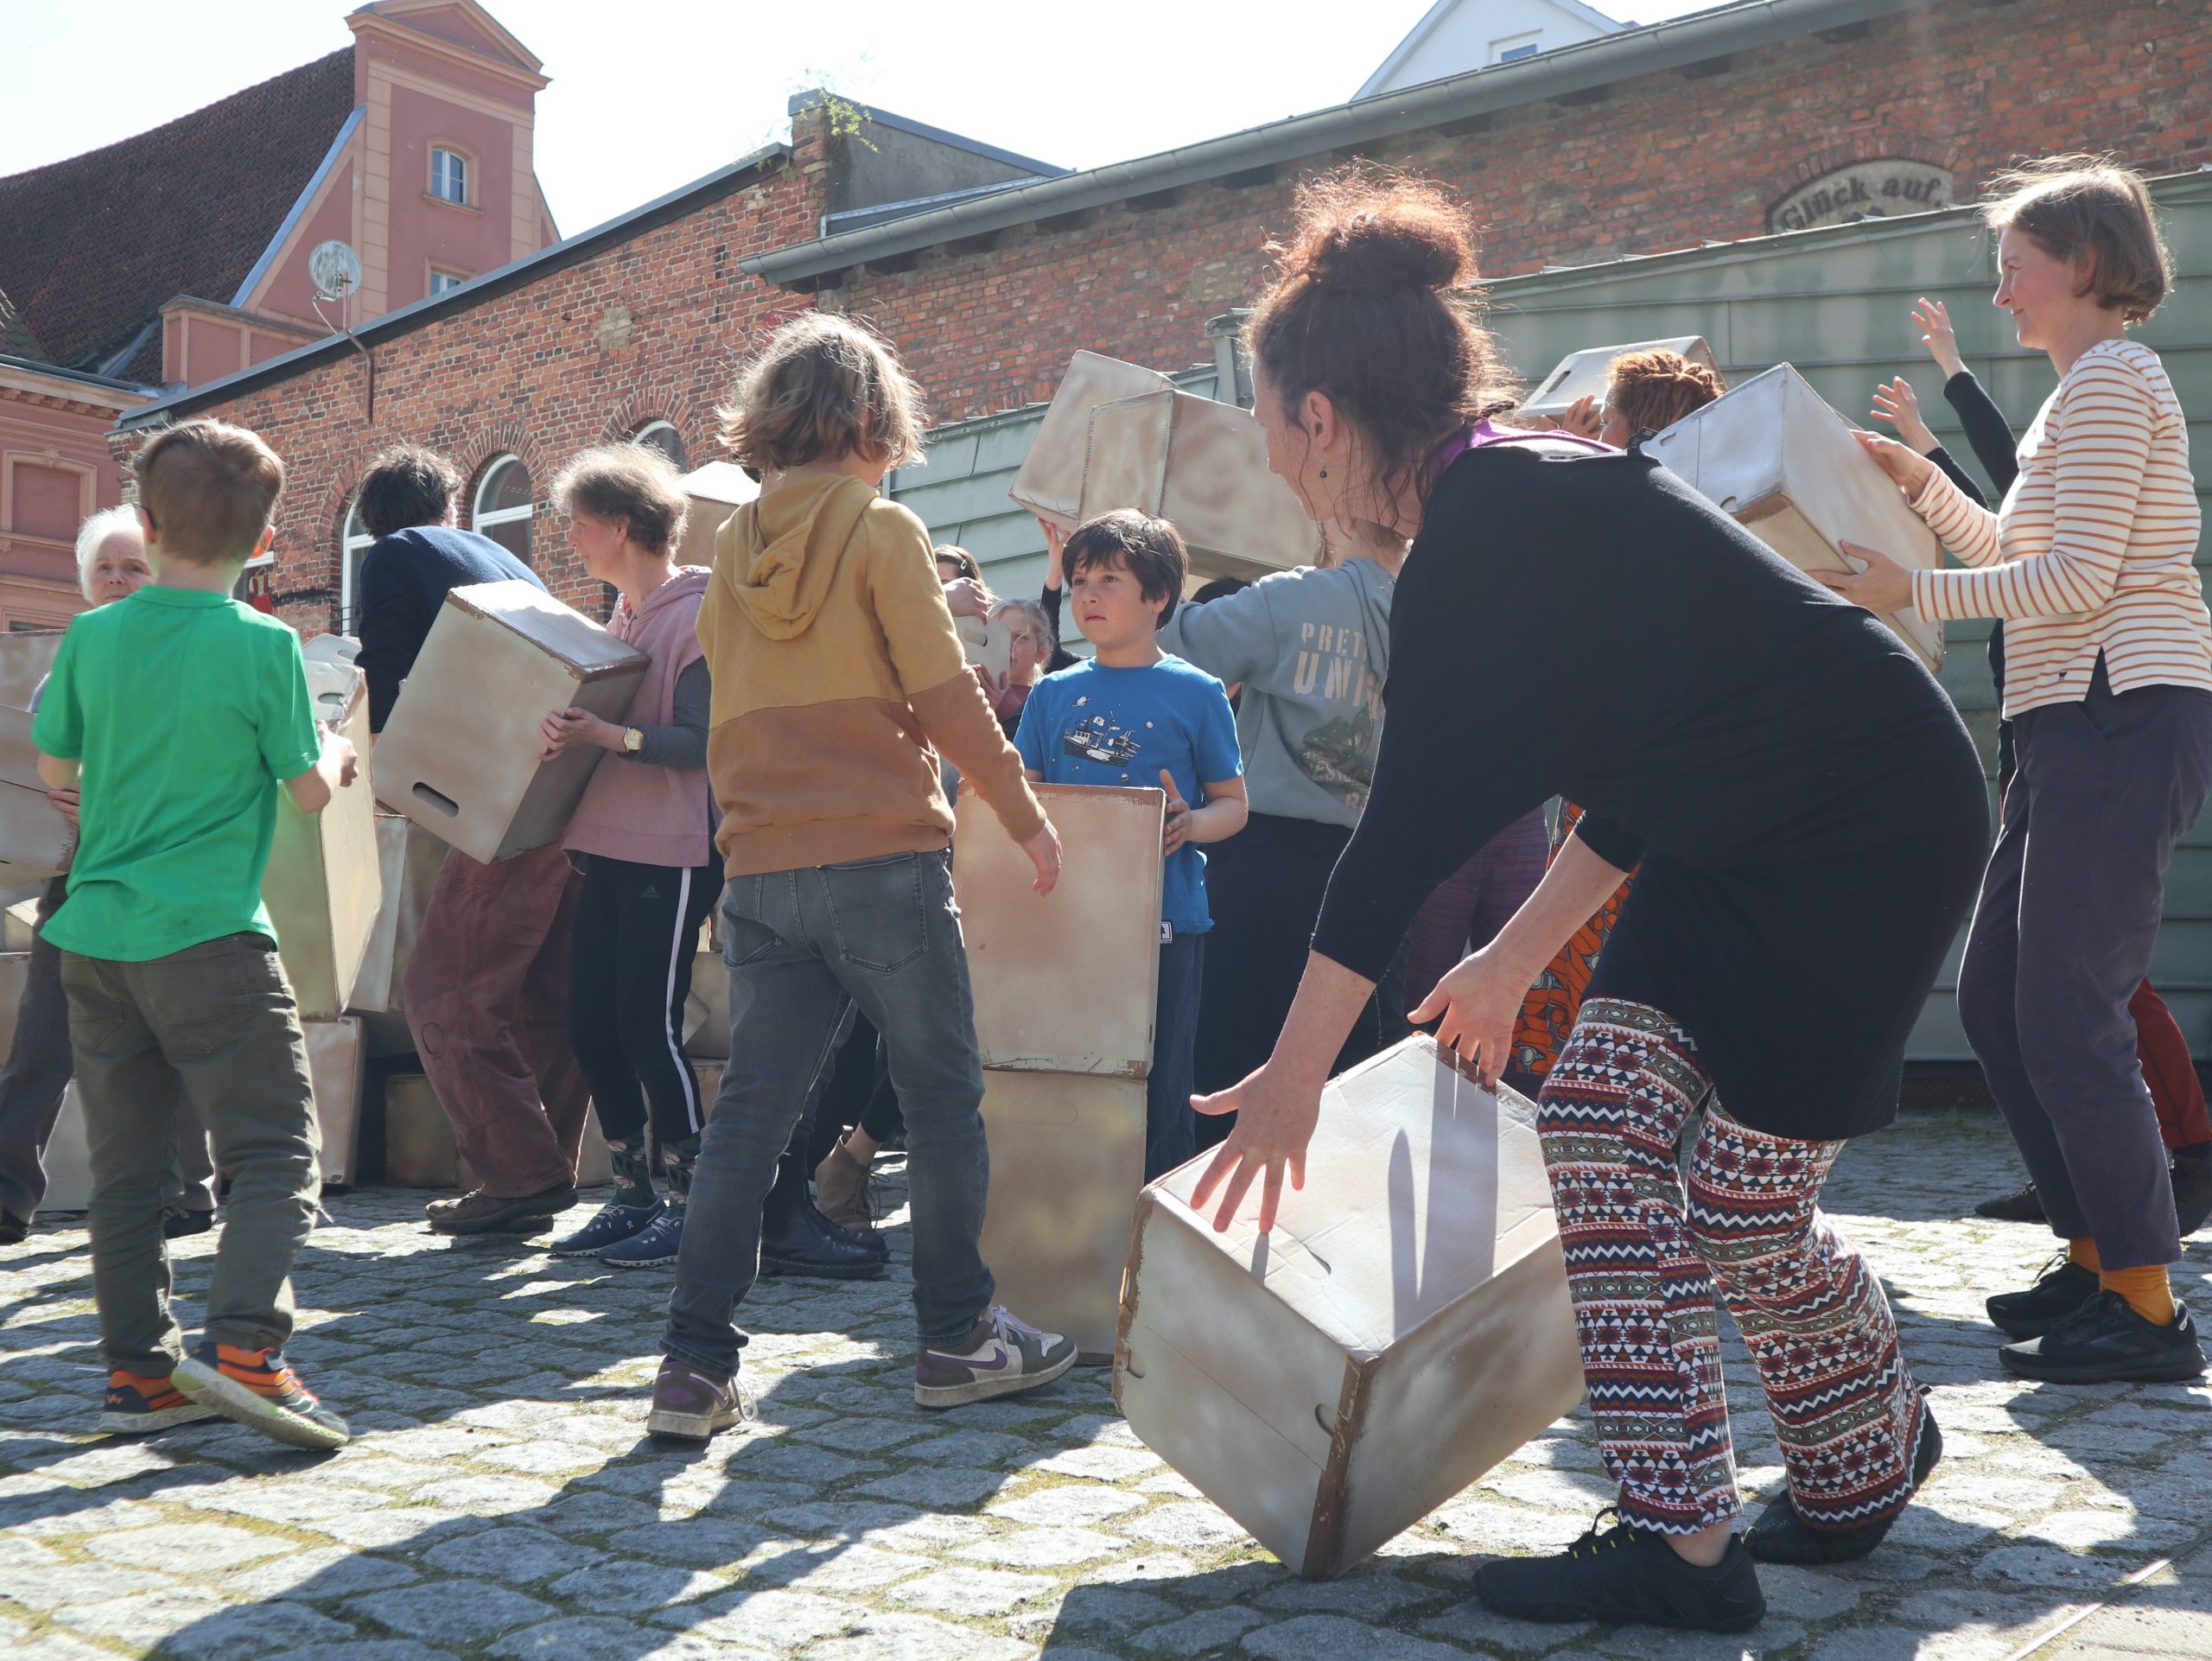 Menschen unterschiedlichen Alters in Alltagskleidung, bewegen sich mit Kisten auf einem öffentlichen Platz.